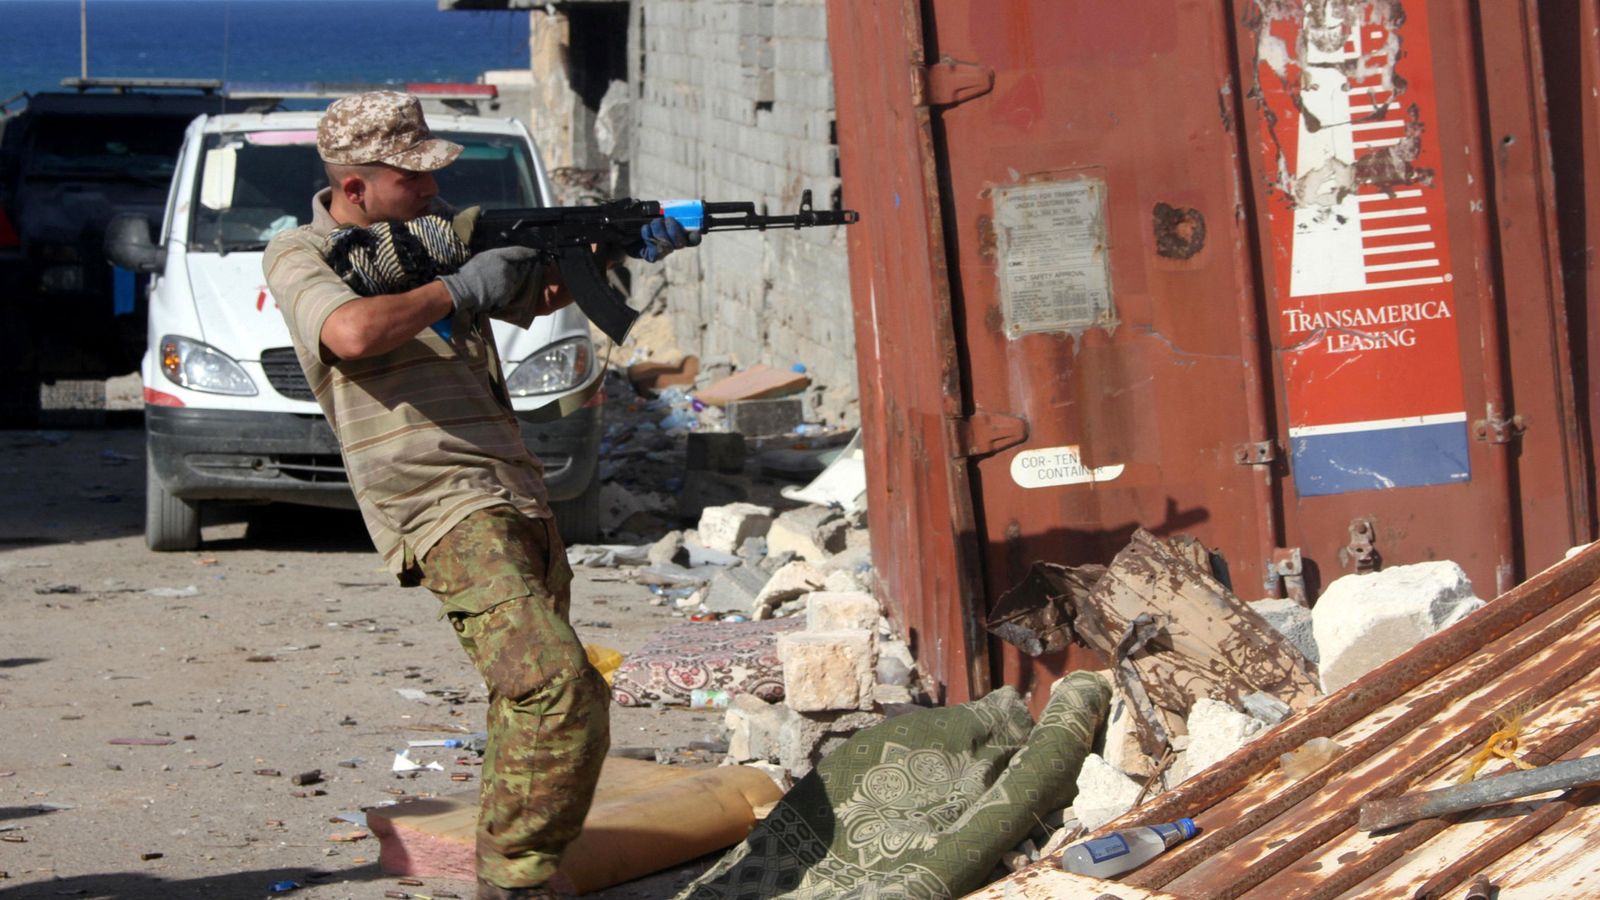 Foto: Un combatiente de las milicias libias aliadas dispara su arma durante una batalla en Sirte, el 31 de octubre (Reuters)